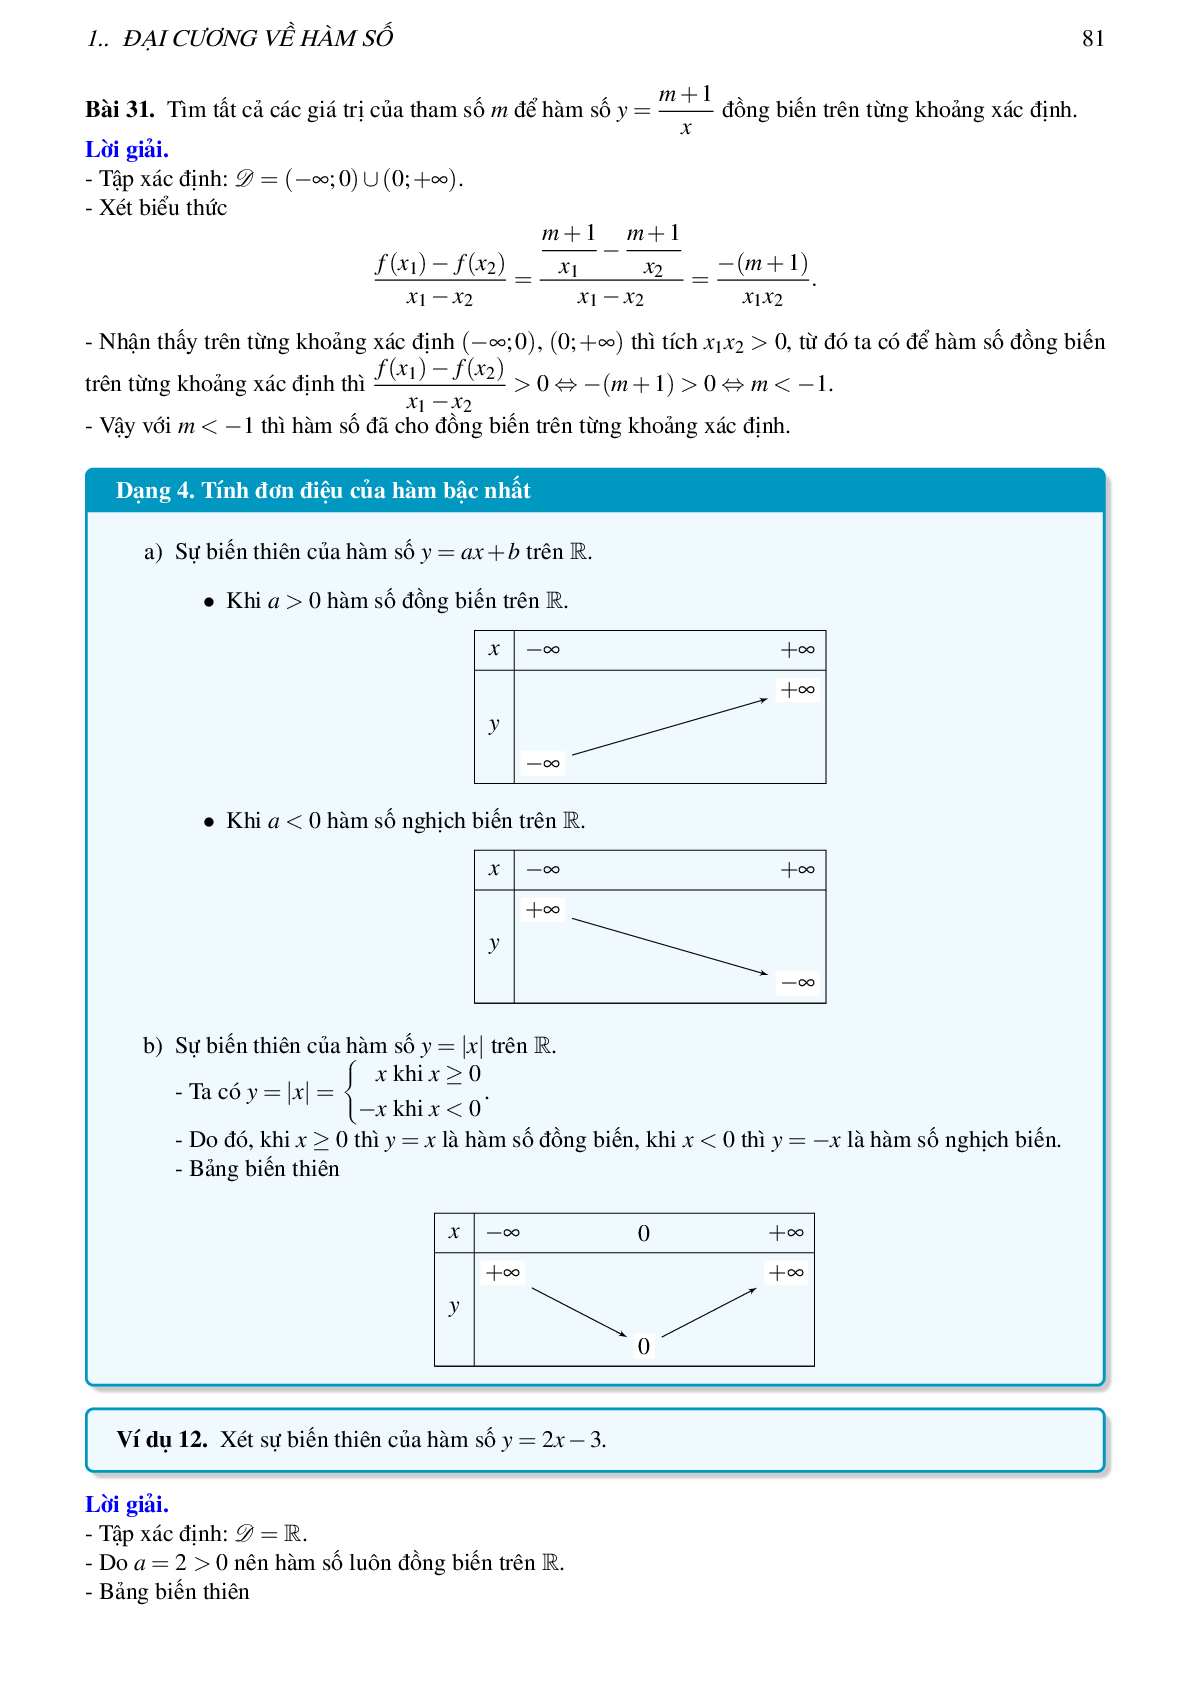 Lý thuyết, các dạng toán và bài tập về hàm số bậc nhất và bậc hai (trang 9)